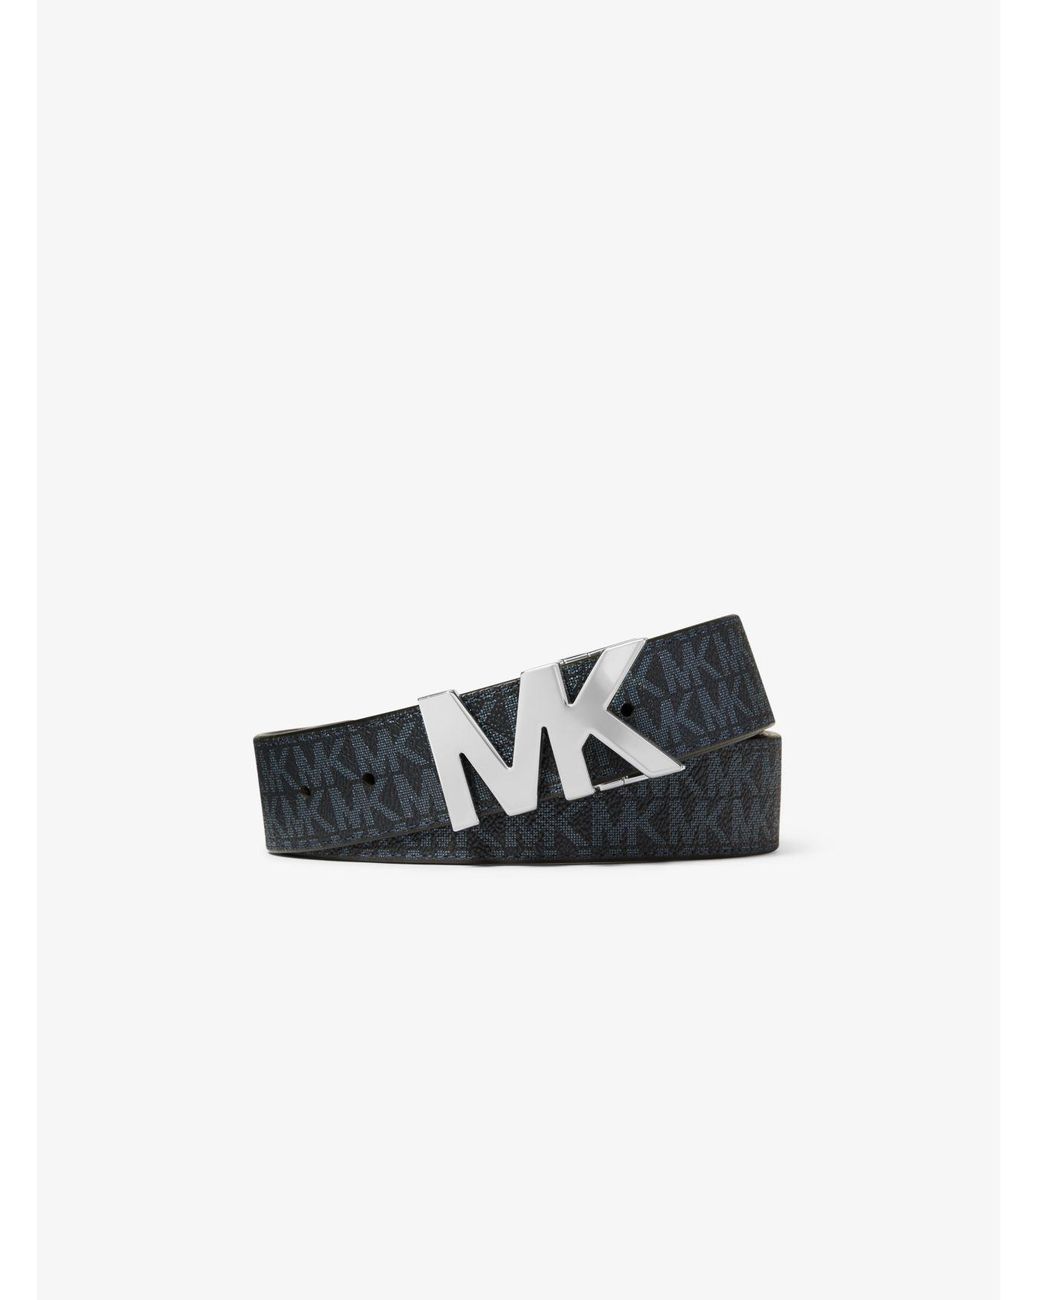 Cinturón con hebilla y logotipo reversible Michael Kors de hombre | Lyst